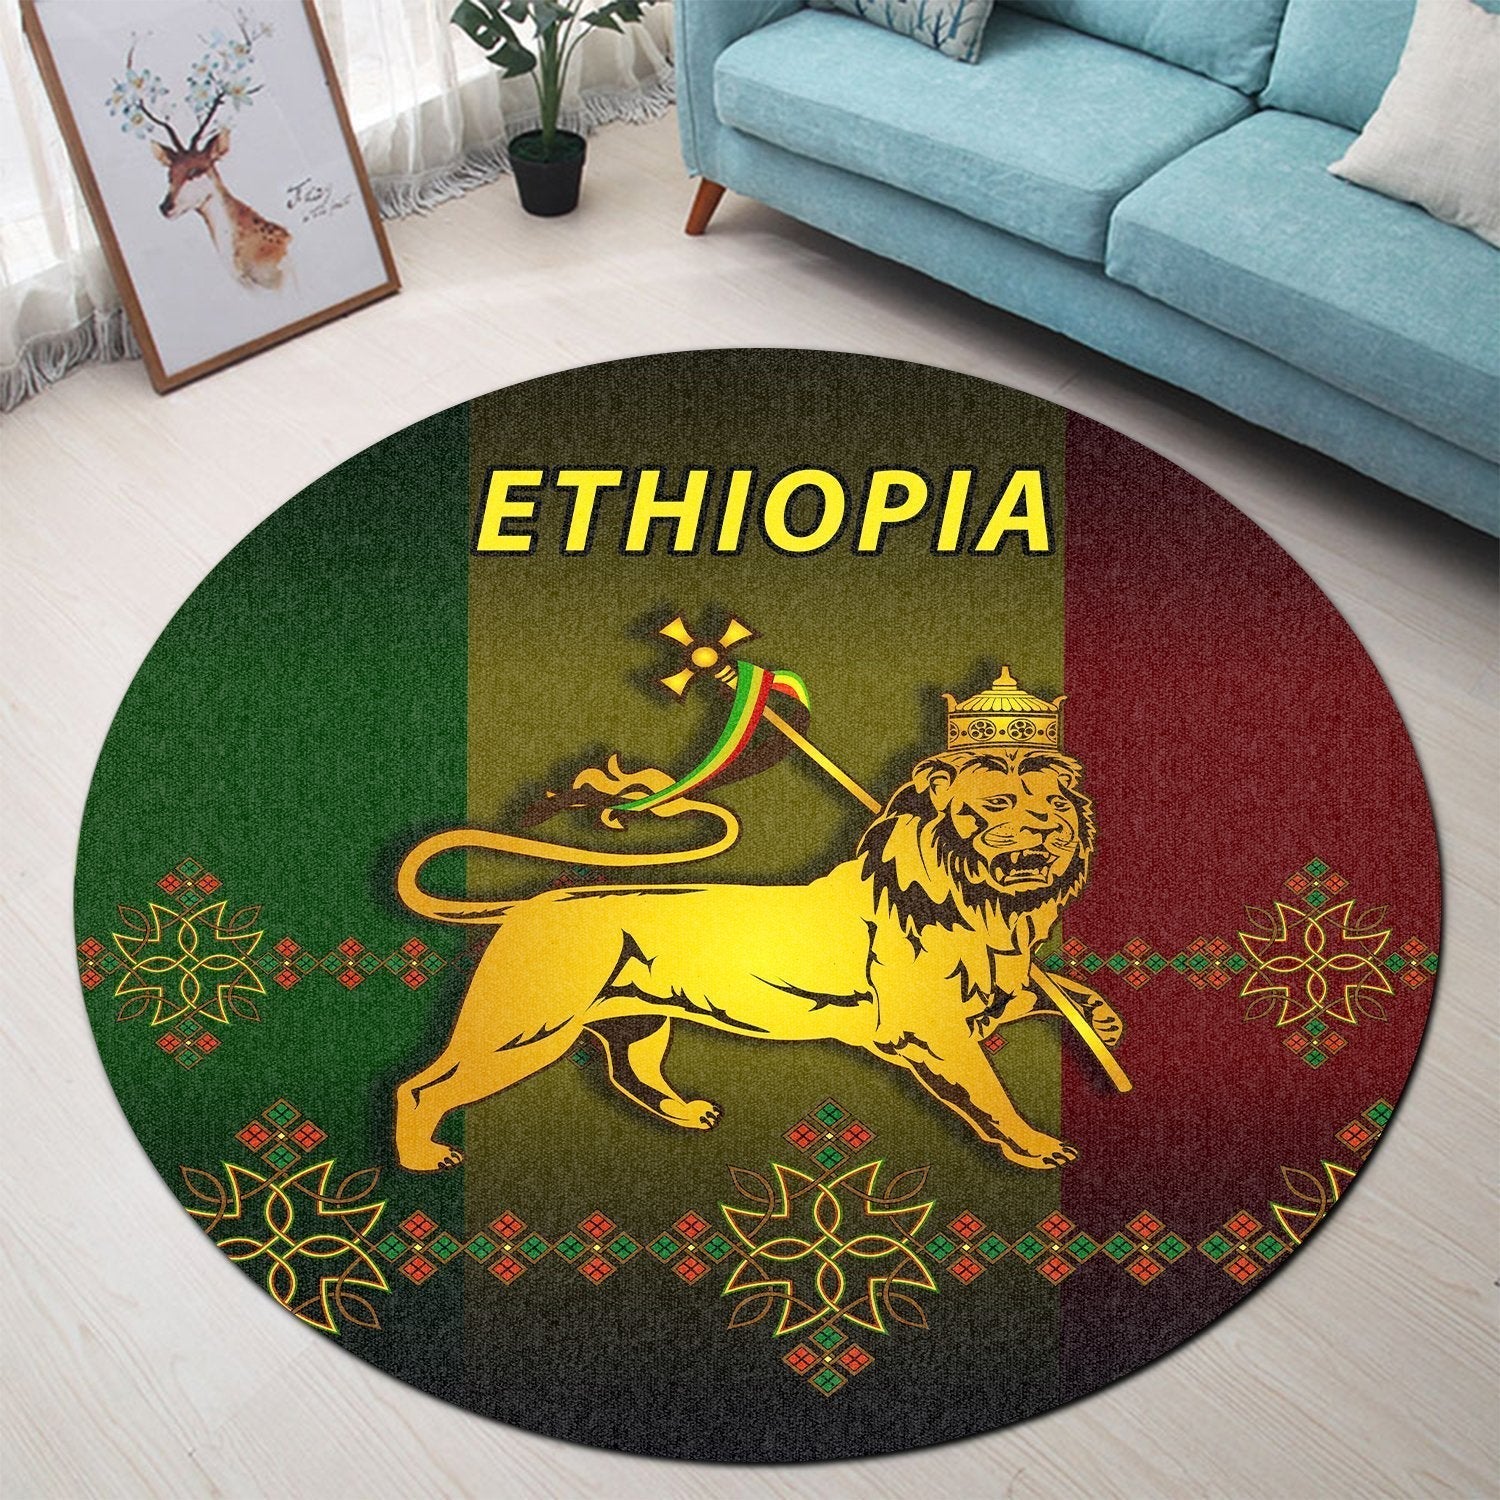 ethiopia-round-carpet